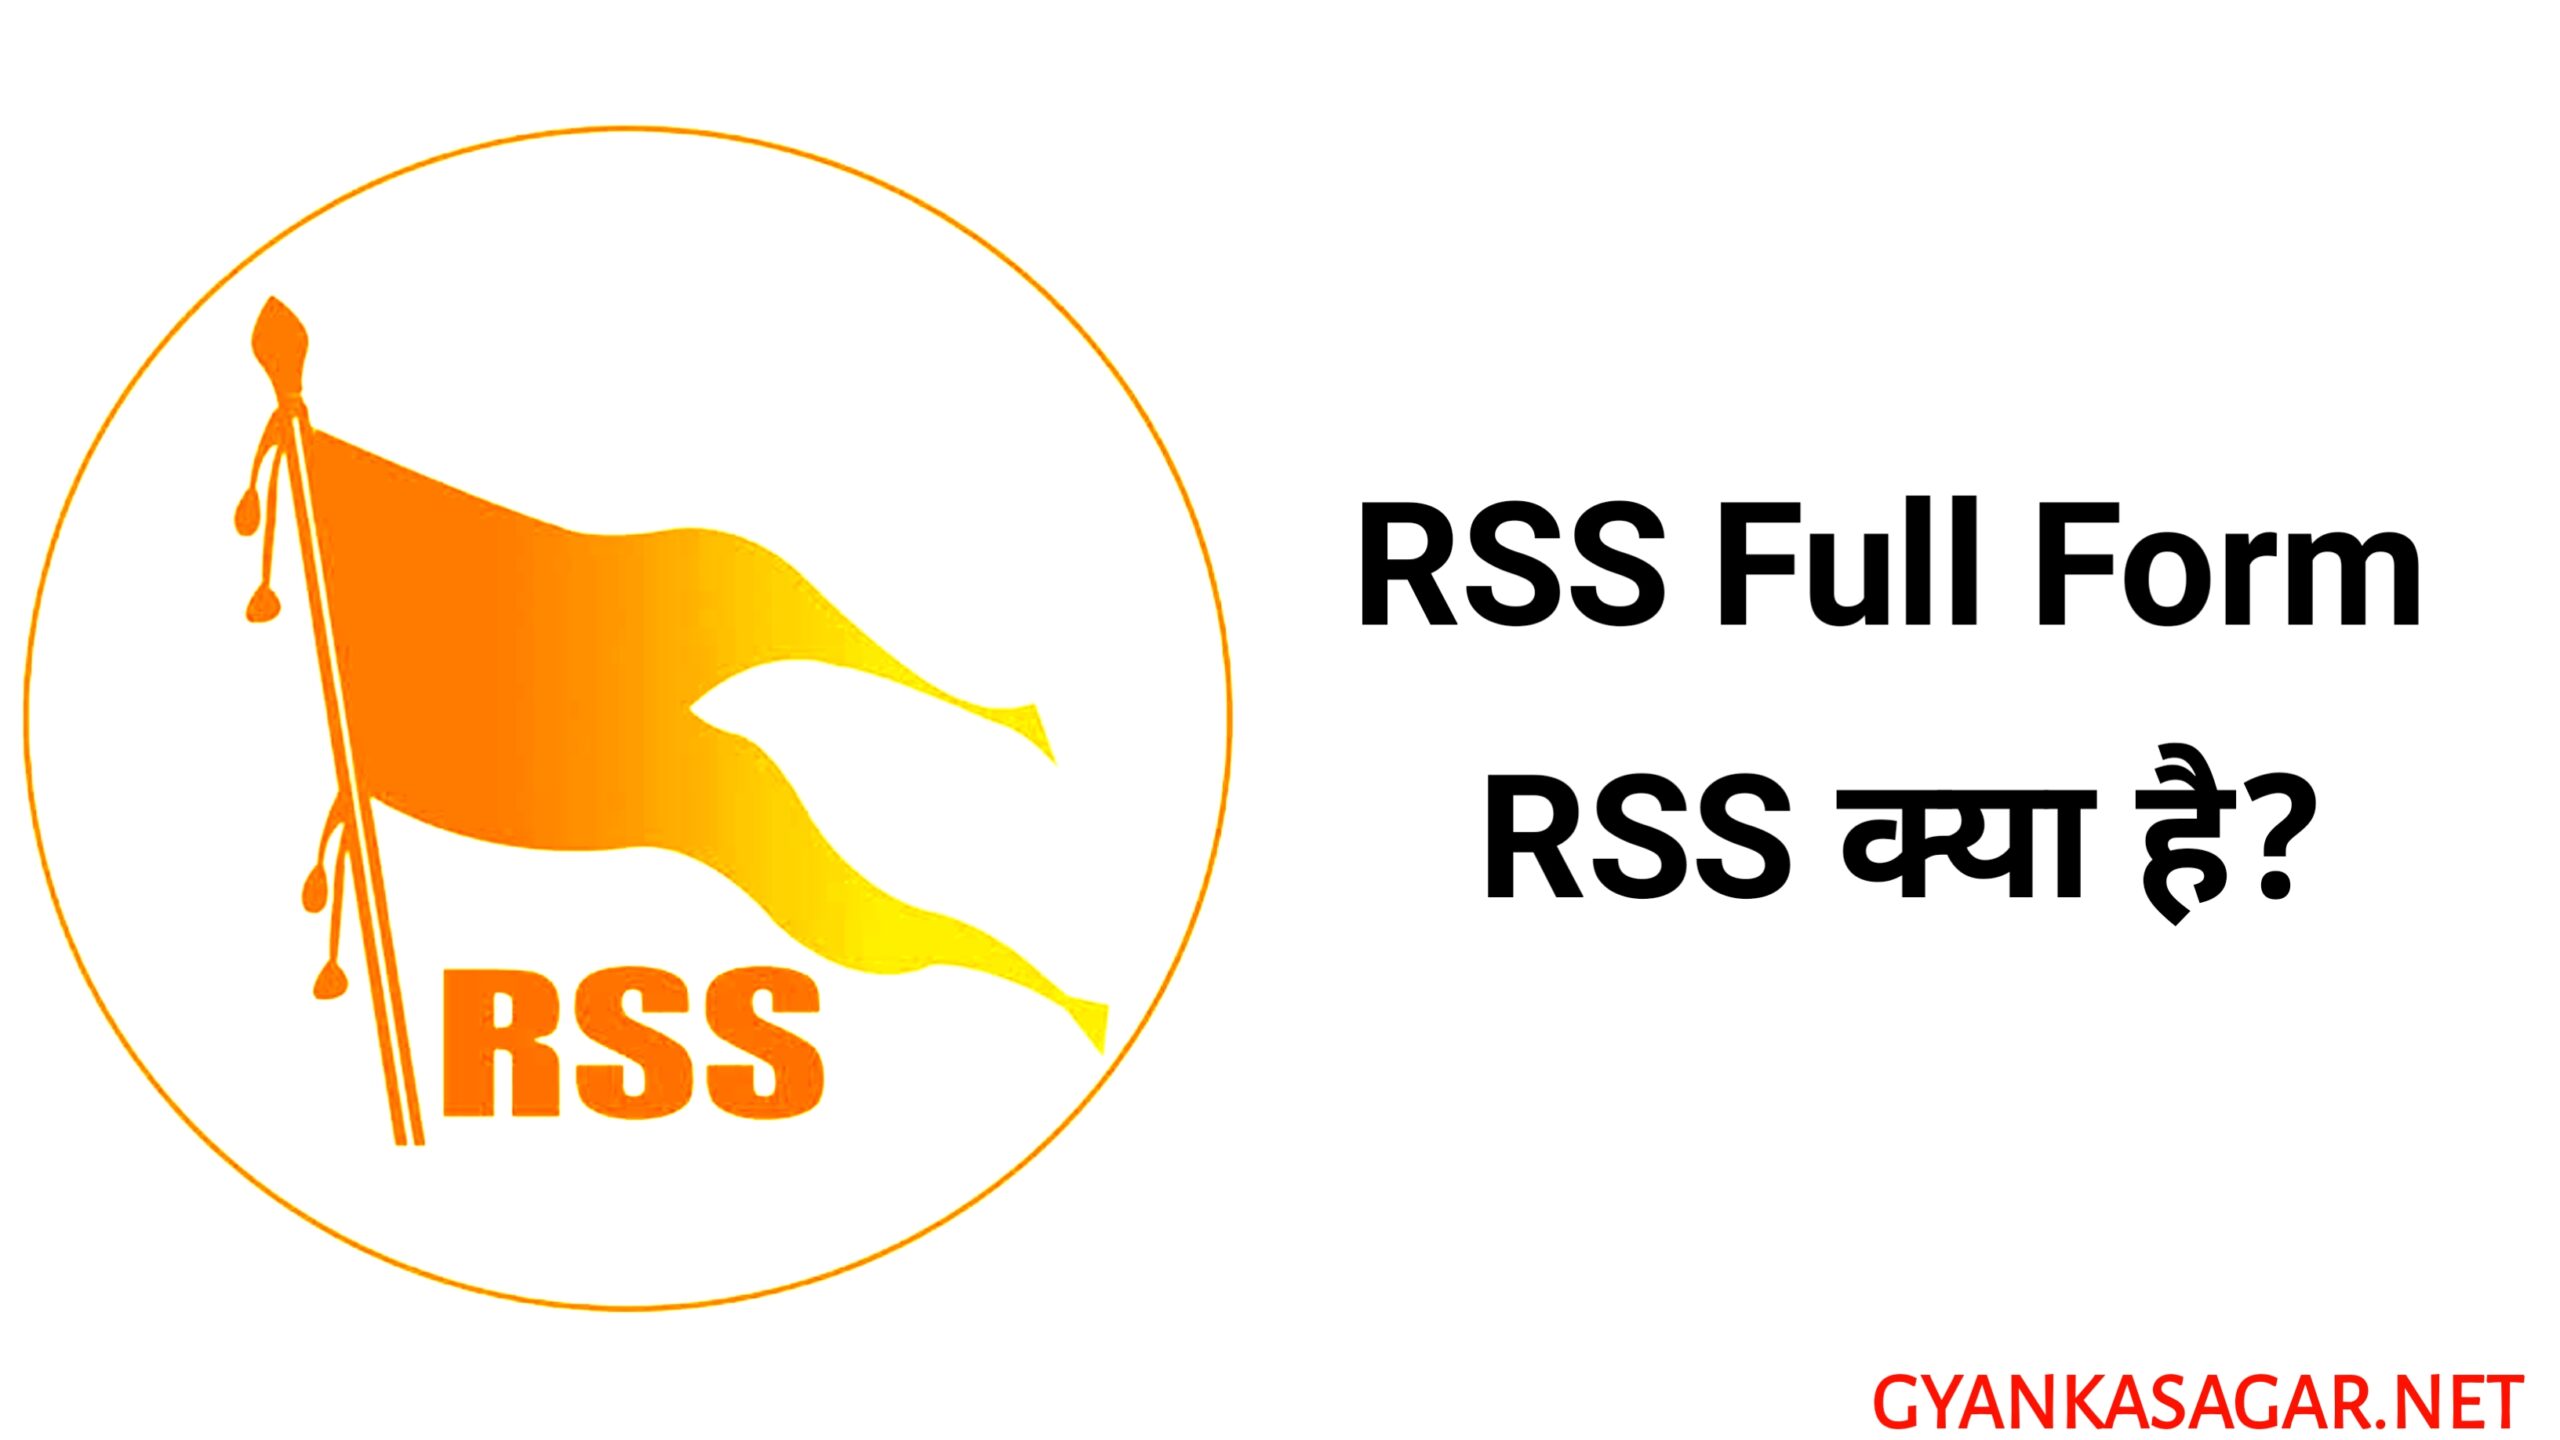 RSS full form - आरएसएस फुल फॉर्म, आरएसएस की फुल फॉर्म क्या है, ‌ आरएसएस फुल फॉर्म इन हिंदी, आरएसएस फुल फॉर्म हिंदी में, आरएसएस का पूरा नाम क्या है, आरएसएस का क्या काम है, आरएसएस क्या है, RSS full form in Hindi, RSS ka pura naam kya hai, राष्ट्रीय स्वयंसेवक संघ